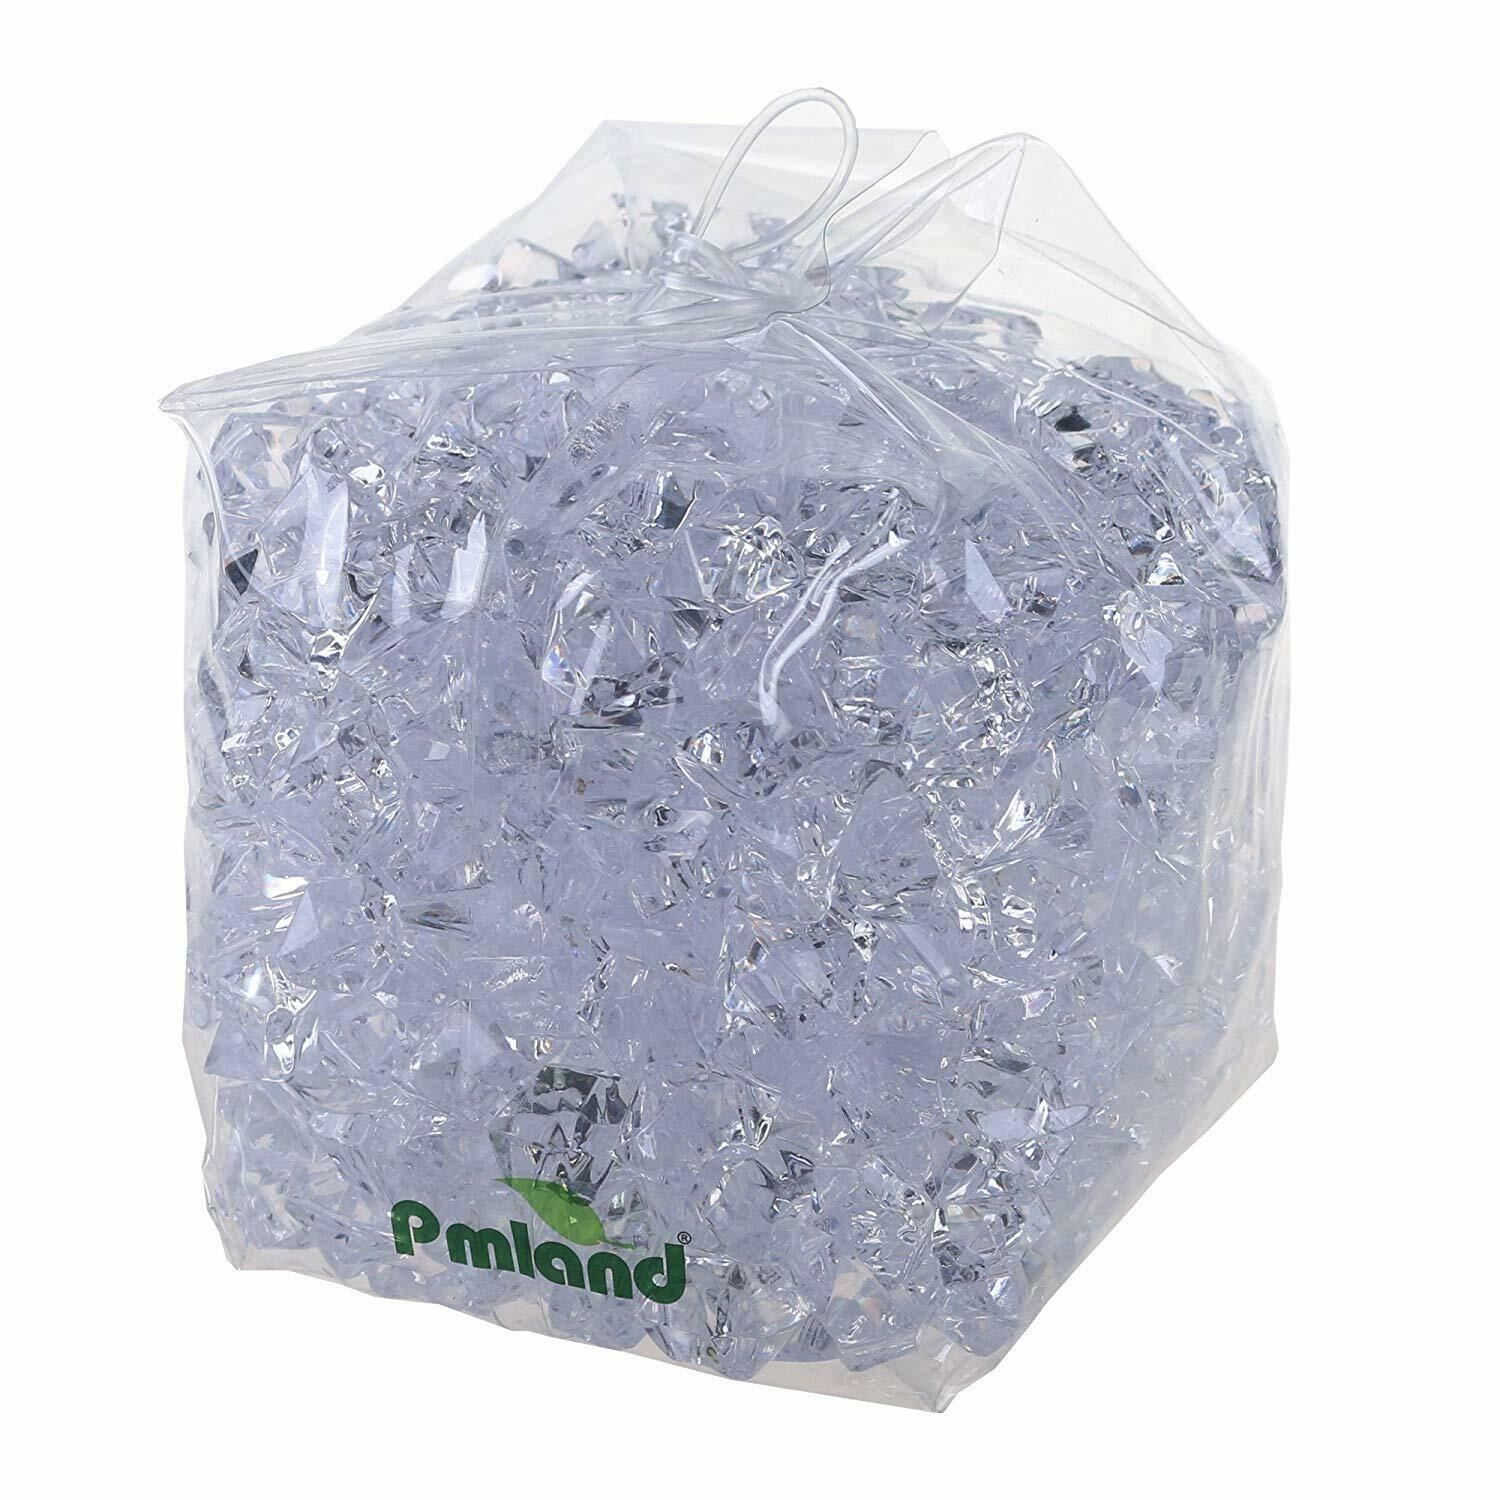 Pmland Clear Acrylic Ice Rocks Crystals Cubes Gems 3lbs Bulk Bag For Table Decor